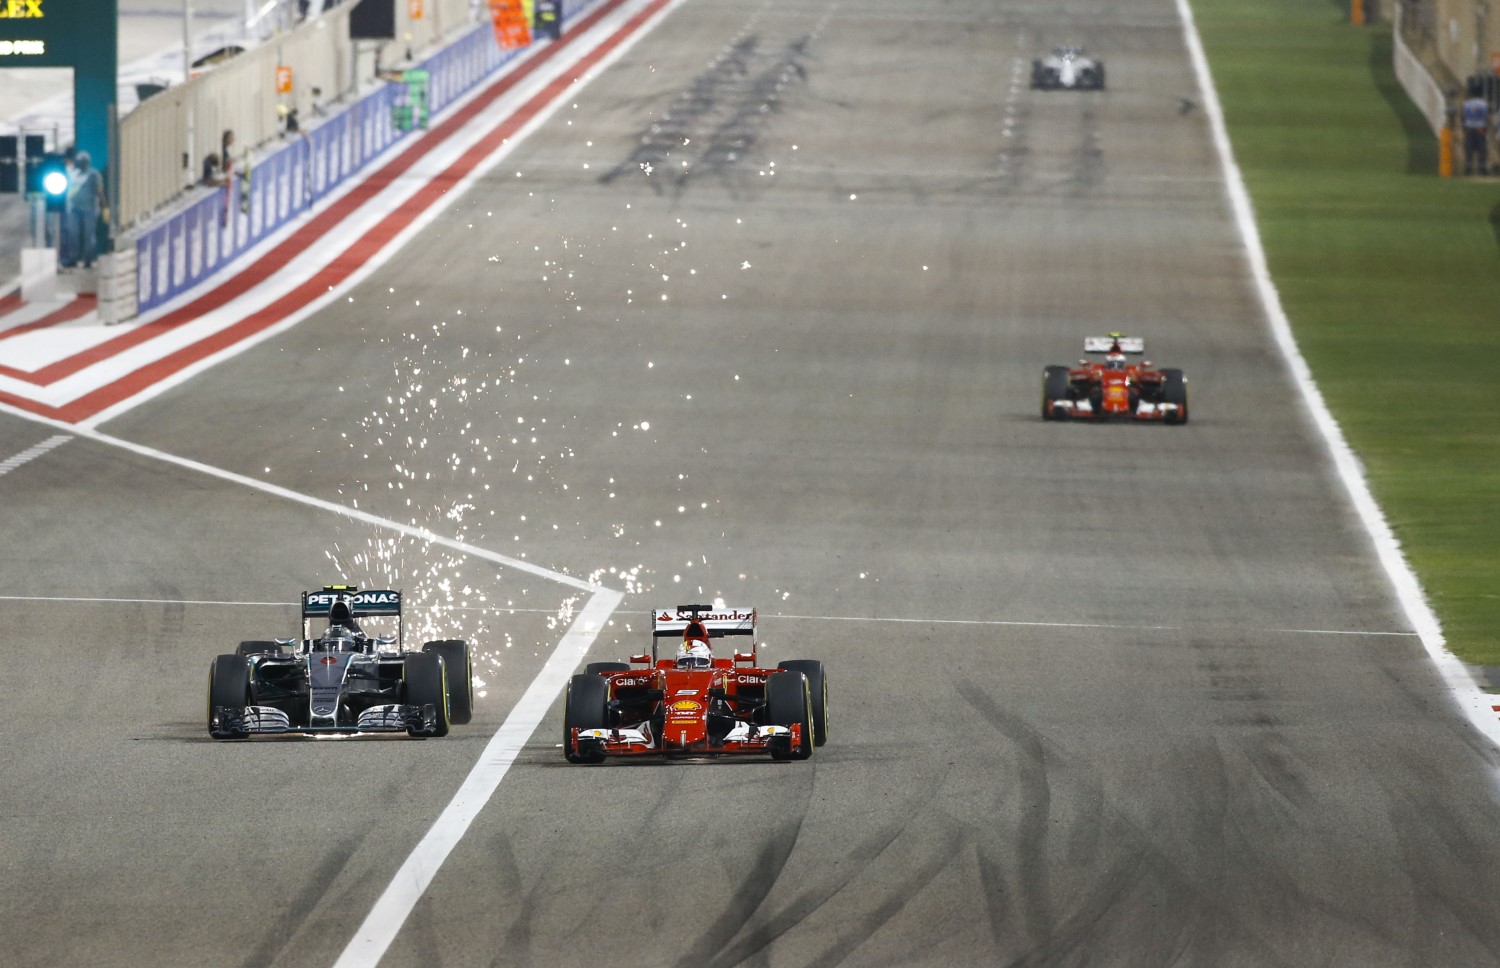 Rosberg aggressively passed Vettel in Bahrain